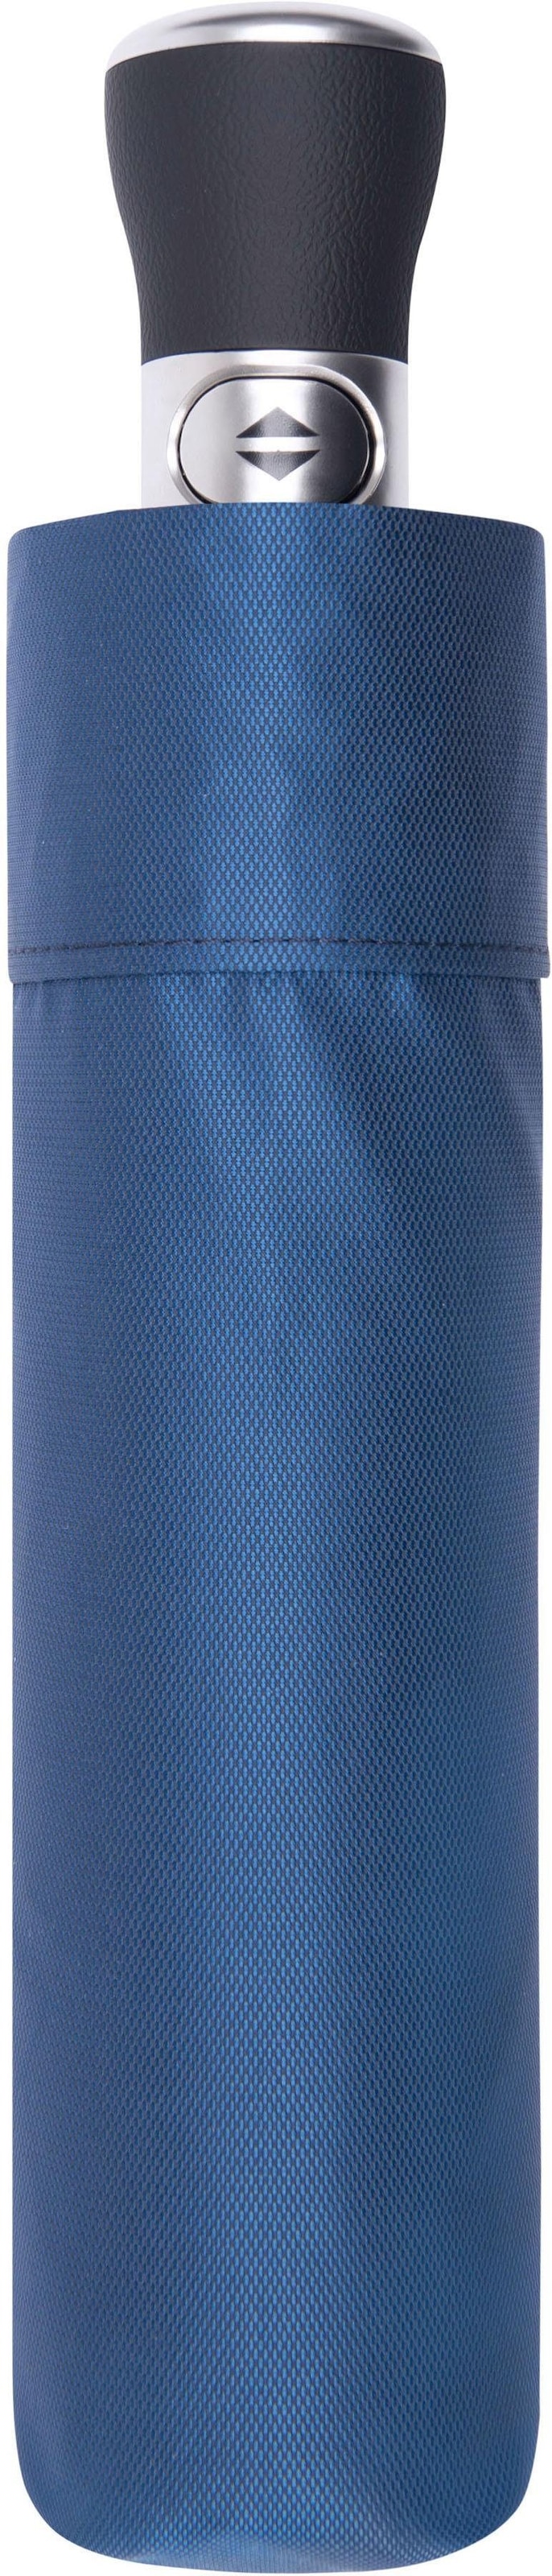 doppler MANUFAKTUR Taschenregenschirm »Oxford Uni, blau«, handgemachter  Manufaktur-Taschenschirm bestellen | BAUR